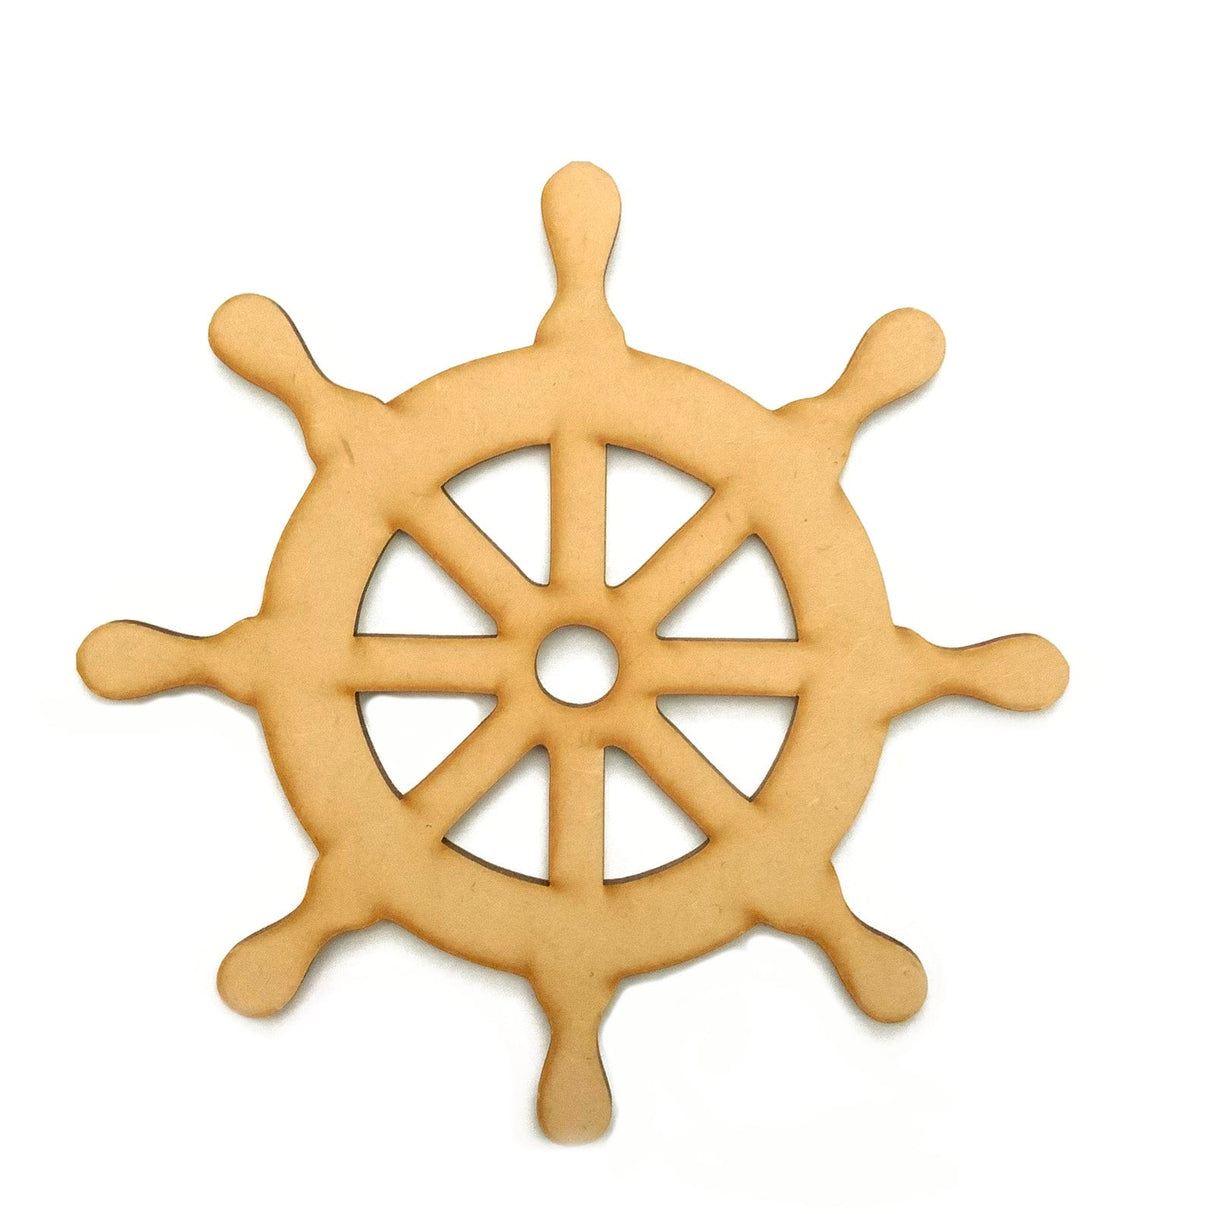 Ship Wheel - Ships Boat Steering Wheel - Laserworksuk